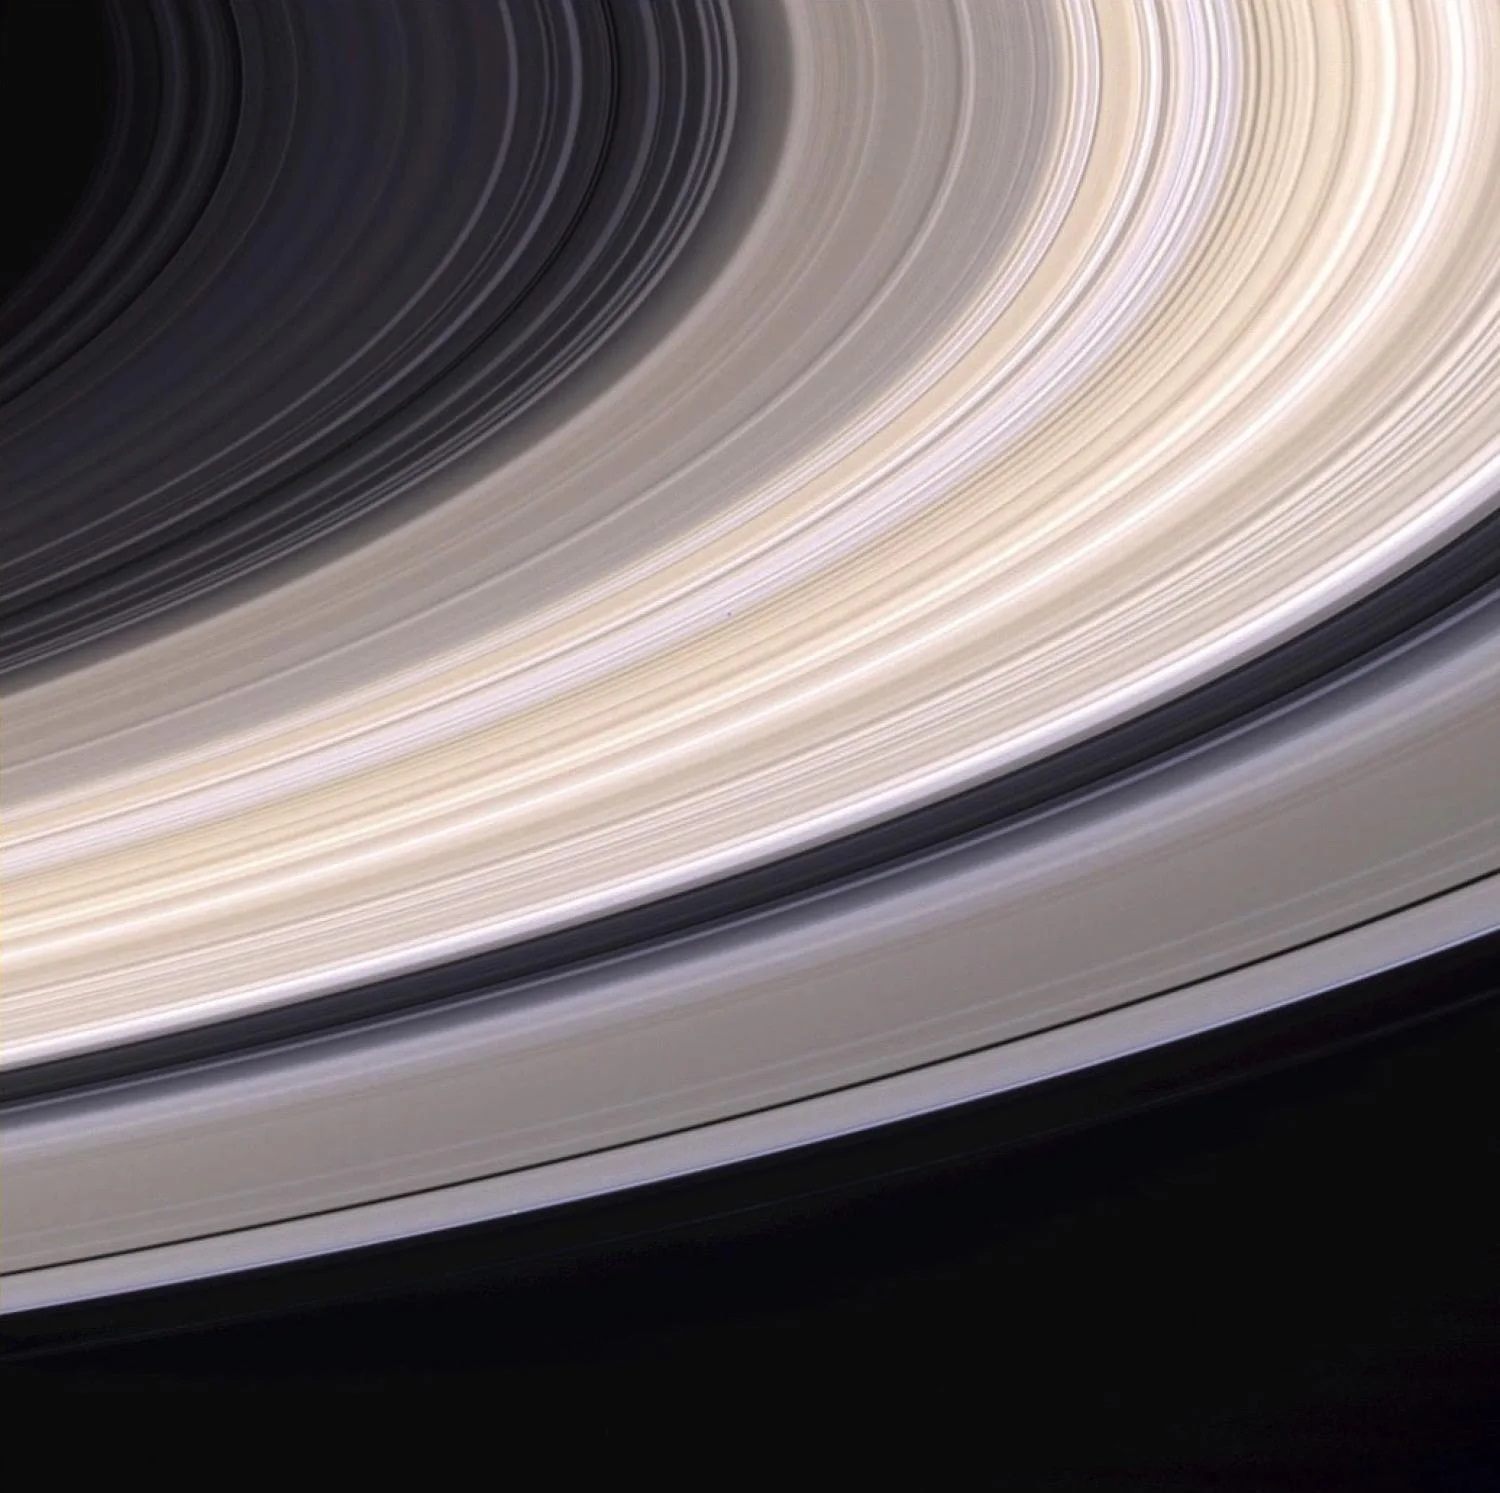 土星环的条纹颜色可能来自于被困在环冰中的少量杂质所造成。来源：NASA/JPL/Space Science Institute